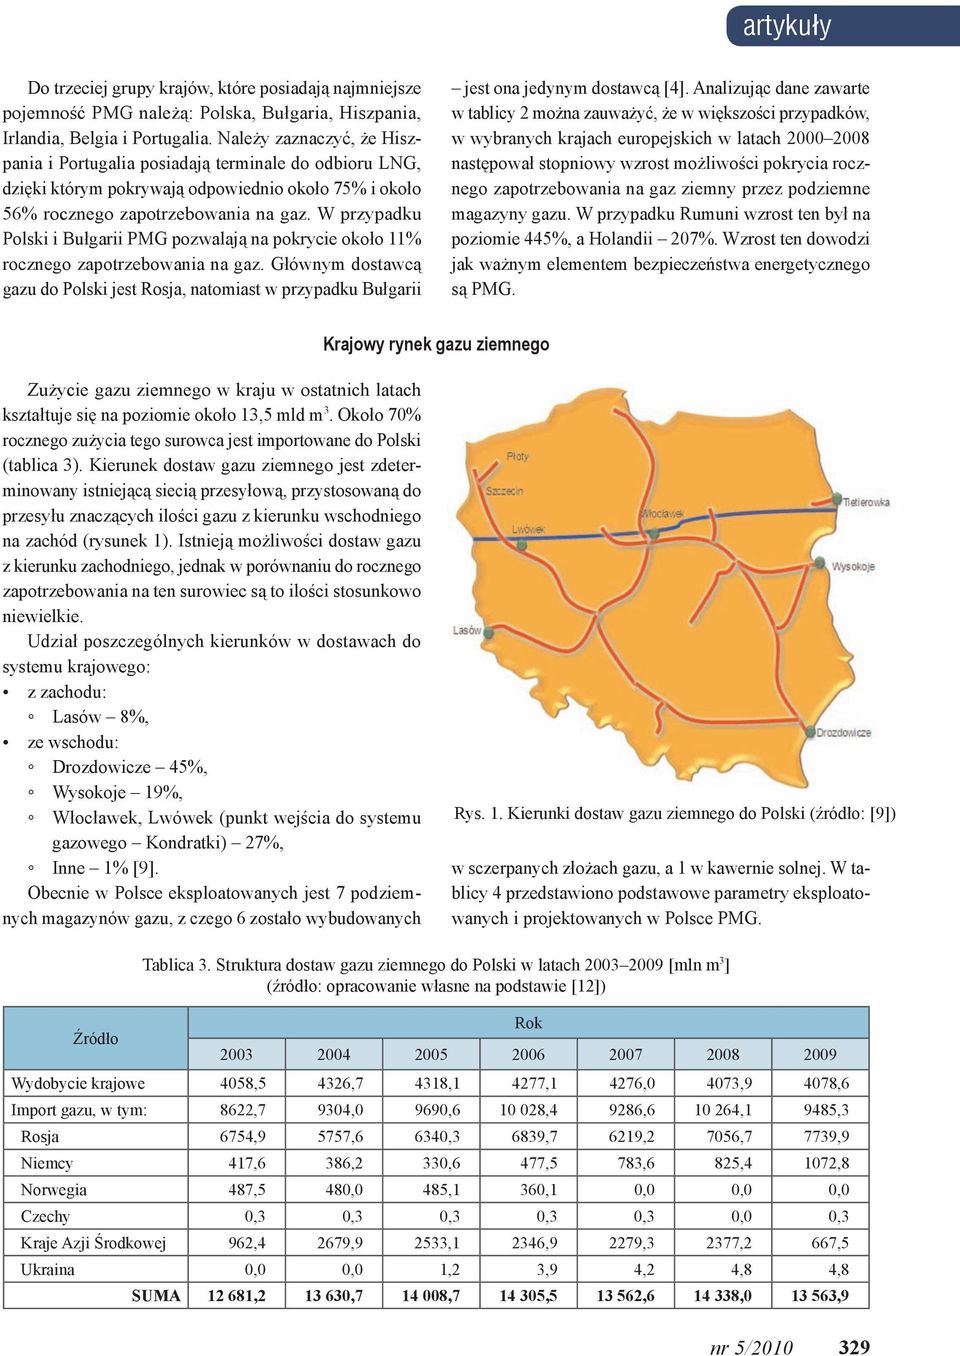 W przypadku Polski i Bułgarii pozwalają na pokrycie około 11% rocznego zapotrzebowania na gaz. Głównym dostawcą gazu do Polski jest Rosja, natomiast w przypadku Bułgarii jest ona jedynym dostawcą [4].